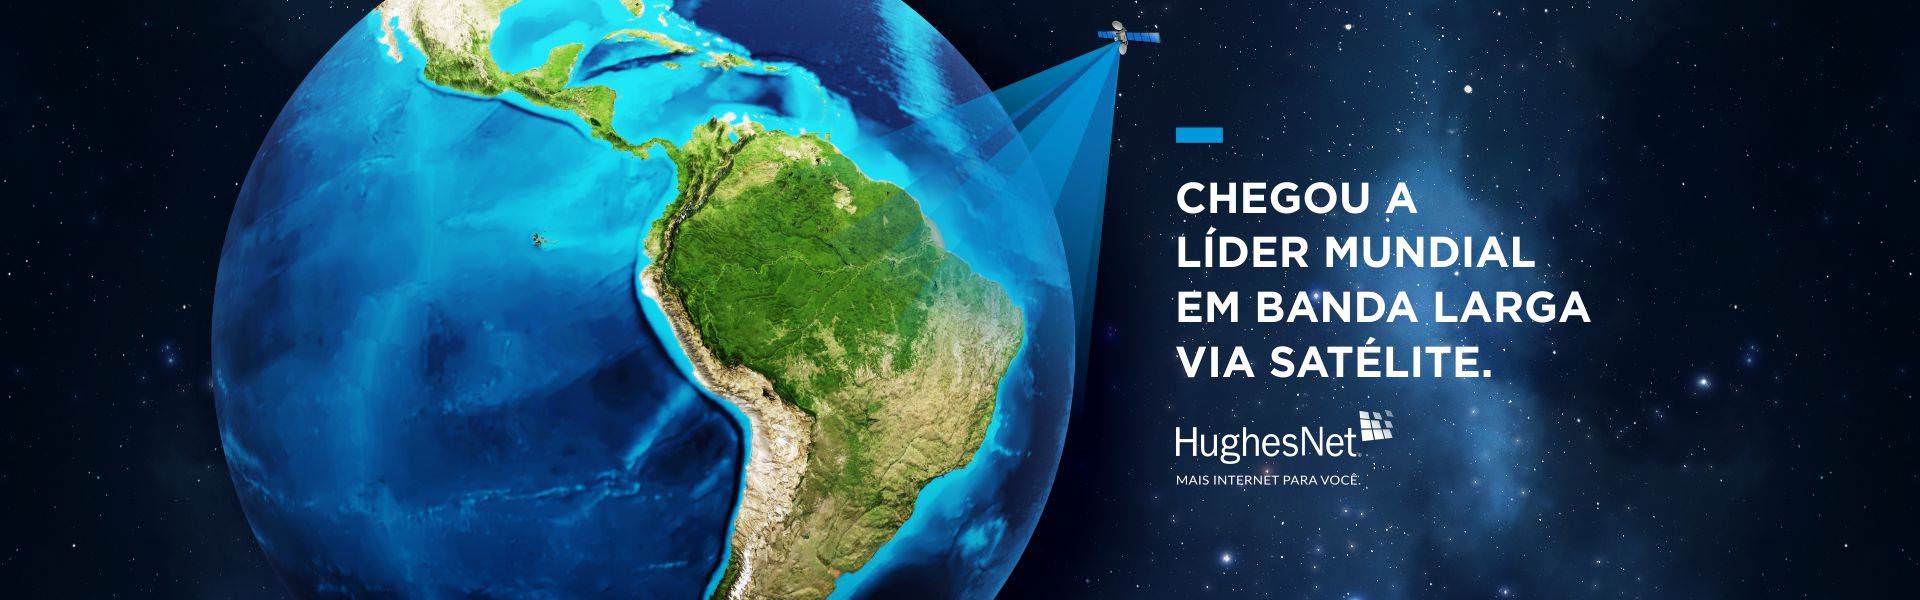 Internet Por Satélite HughesNet no município de Taquarussu no estado do Mato Grosso do Sul